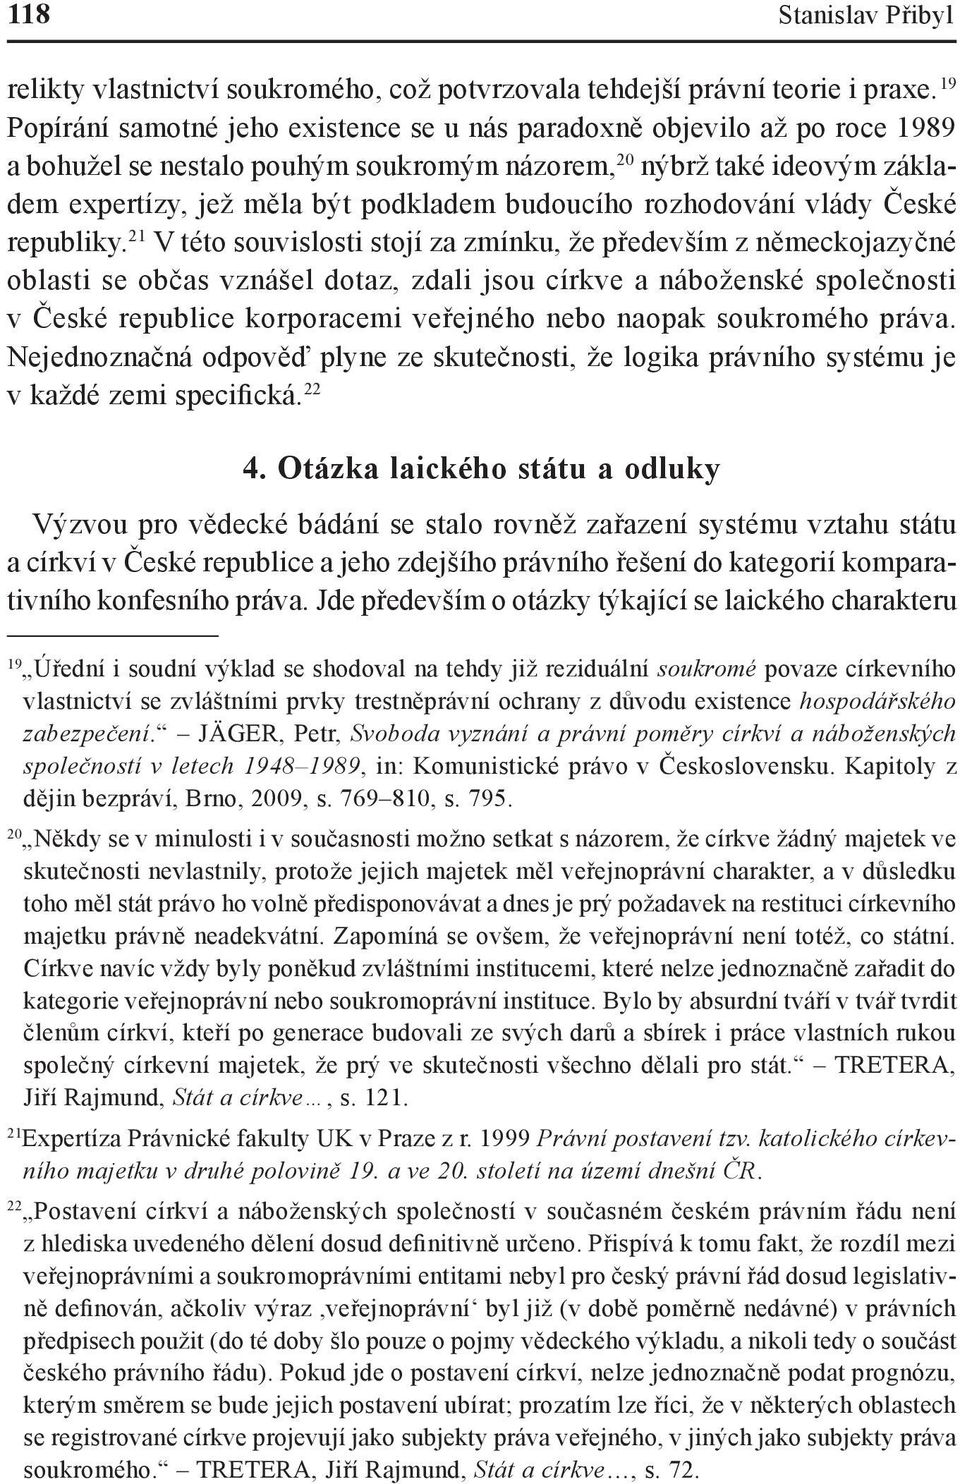 budoucího rozhodování vlády České republiky.